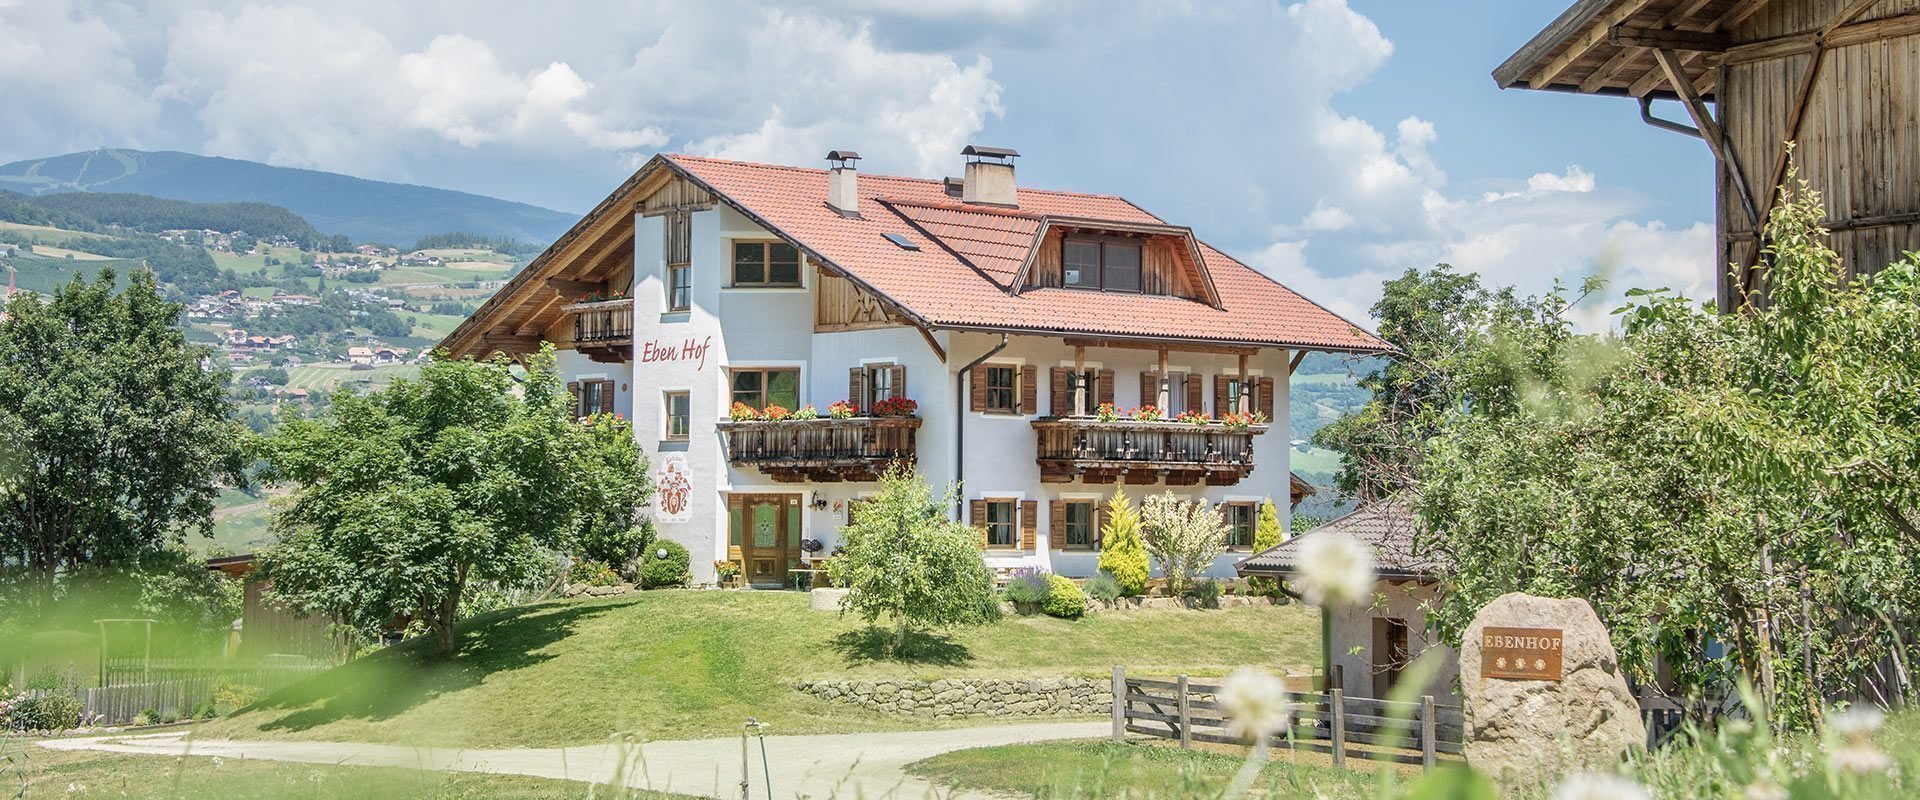 Ebenhof | Urlaub auf dem Bauernhof in Steinegg/Eggetal/Südtirol